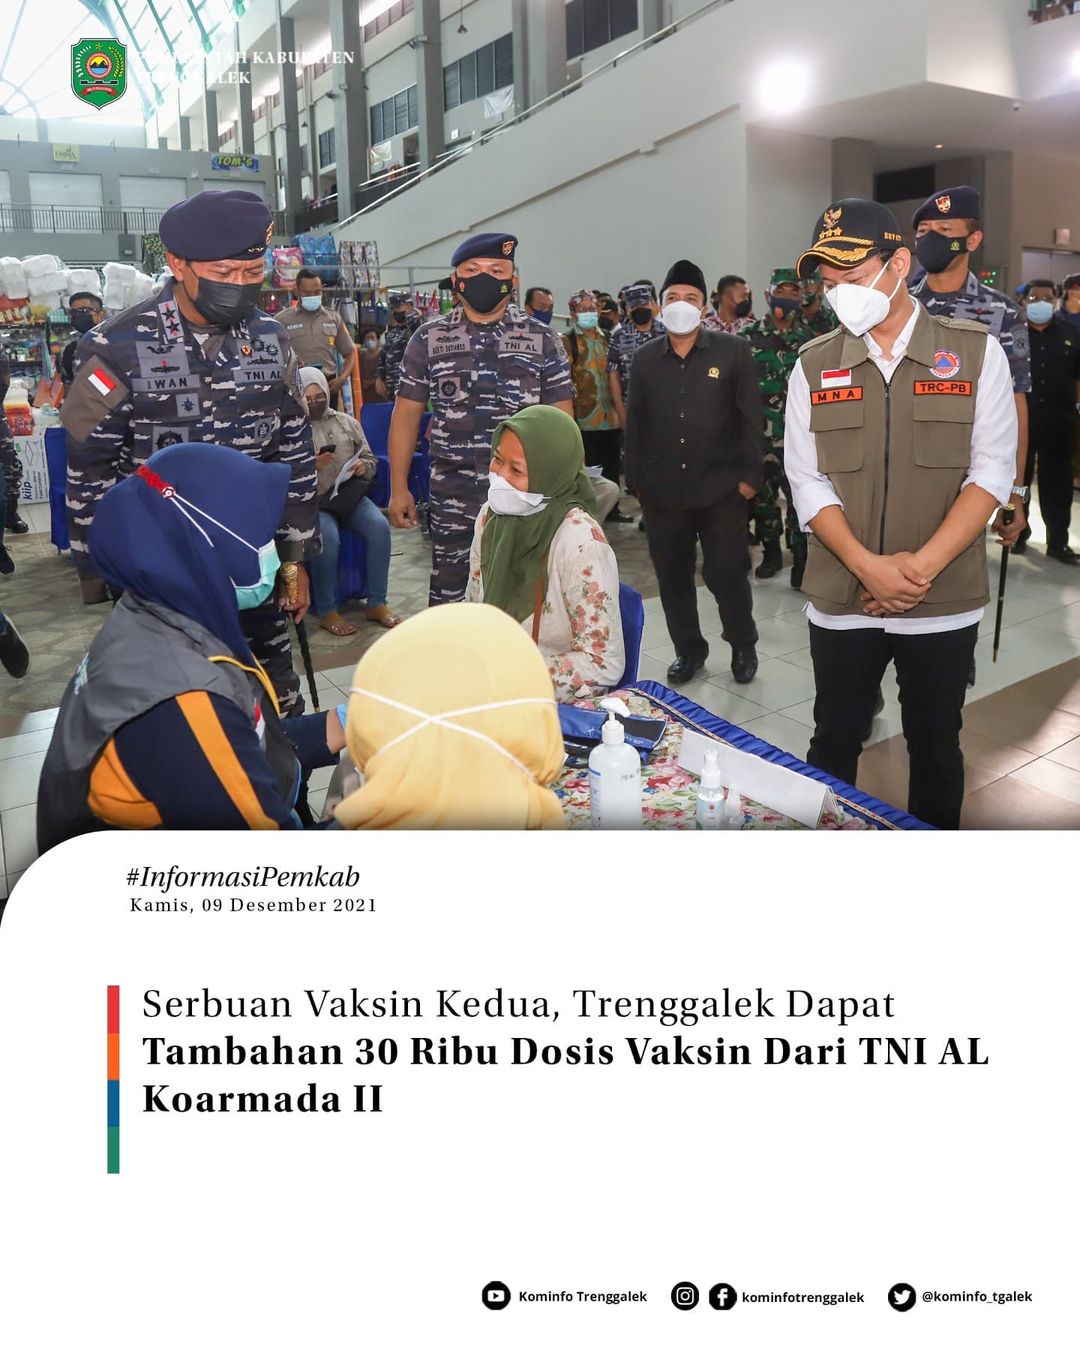 Serbuan Vaksin Kedua, Trenggalek Dapat Tambahan 30 Ribu Dosis Vaksin Dari TNI AL Koarmada II